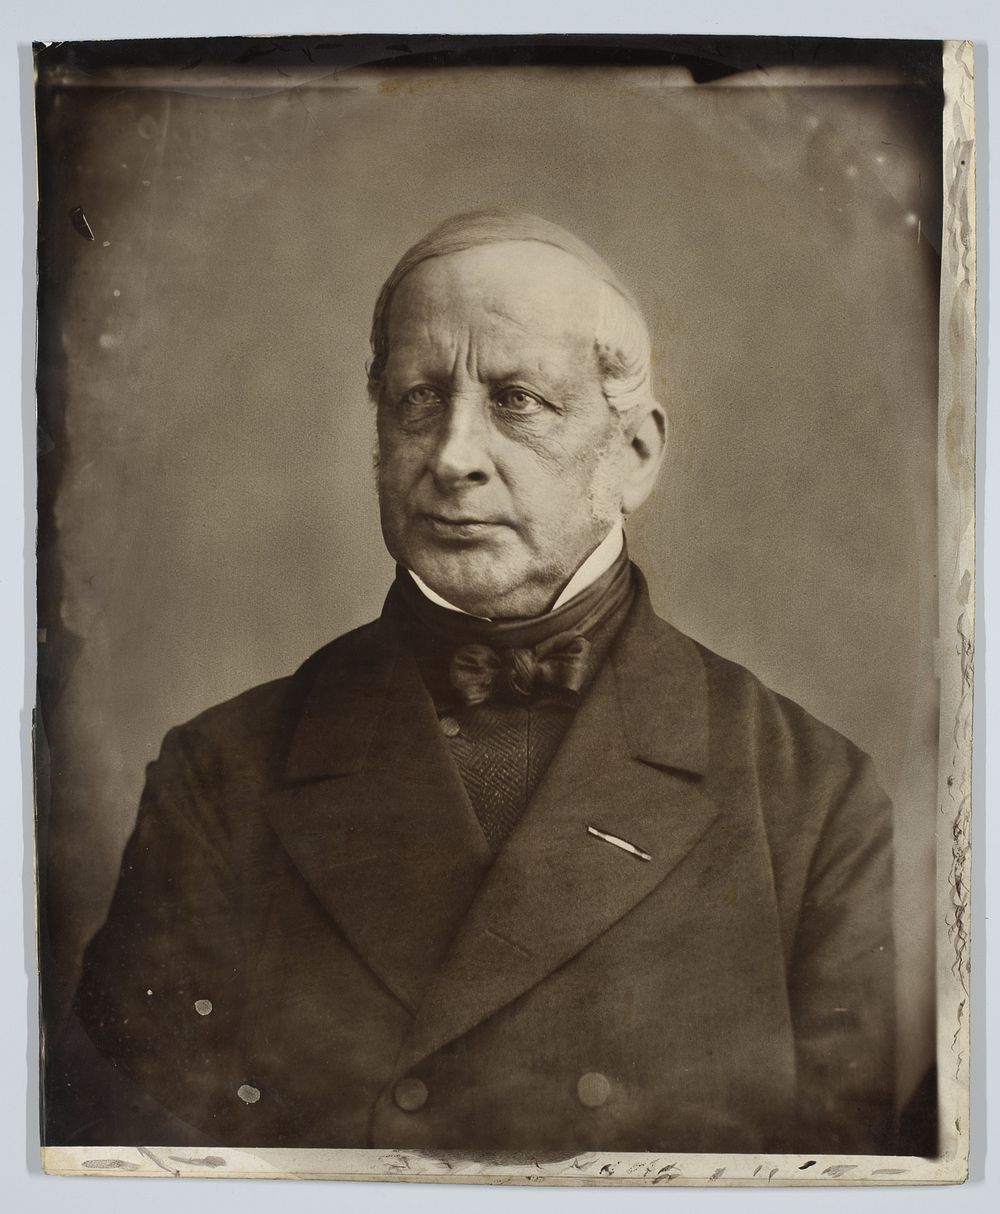 Portret van Christiaan Pieter van Eeghen (1816-1889) (c. 1880 - c. 1890) by Wegner and Mottu